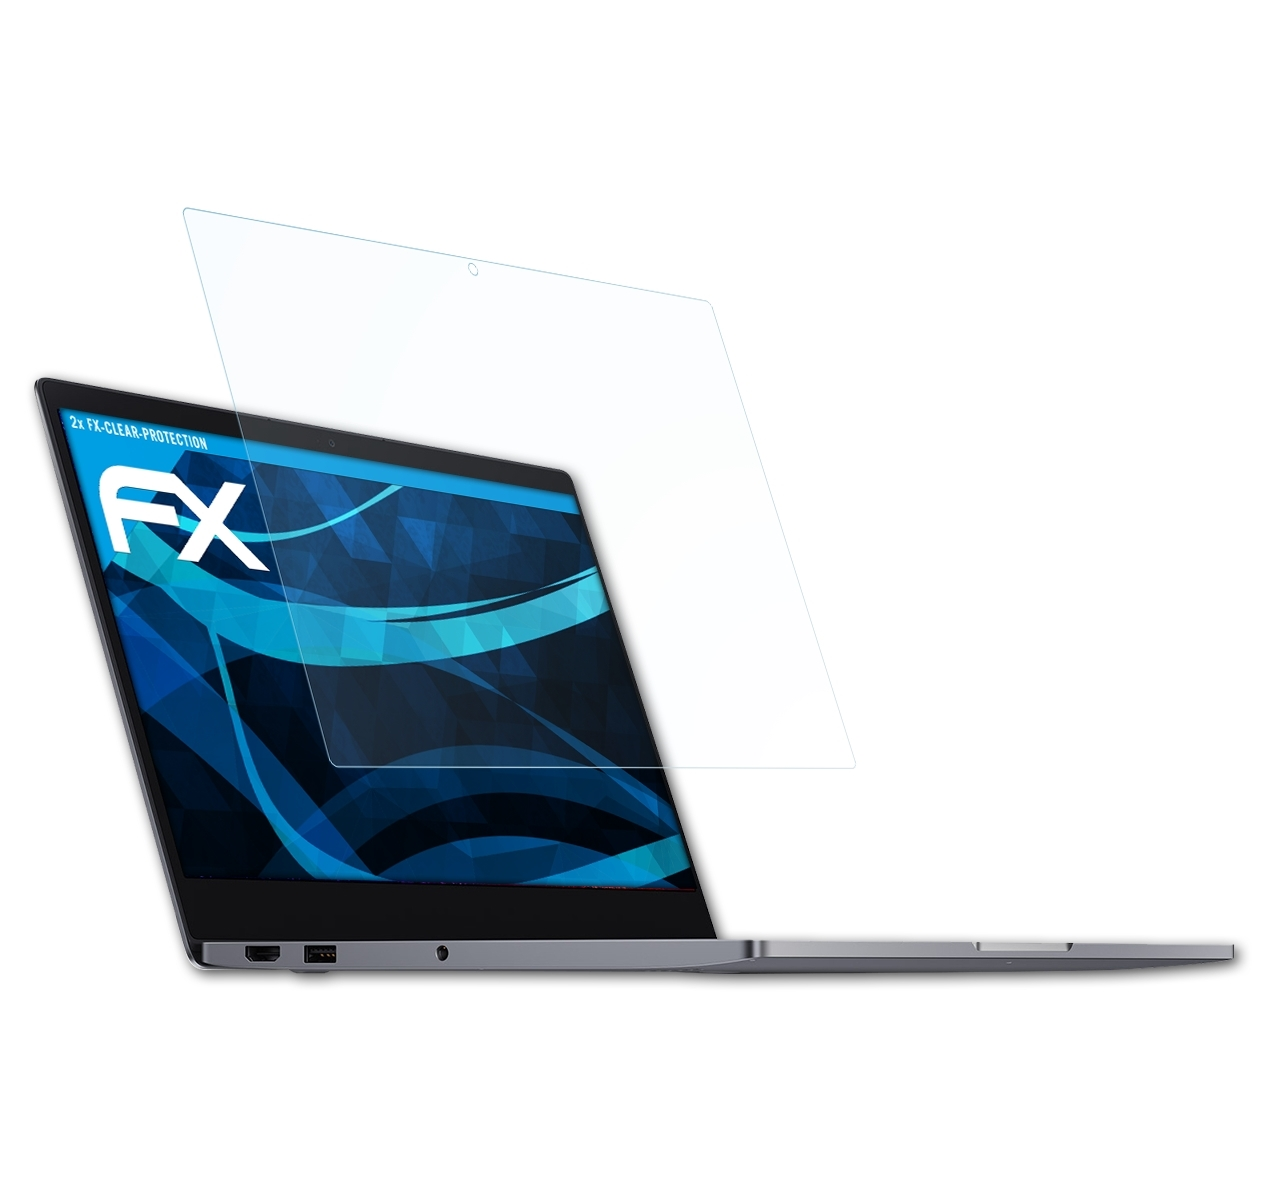 13.3) ATFOLIX 2x Mi Xiaomi FX-Clear Displayschutz(für Notebook Air